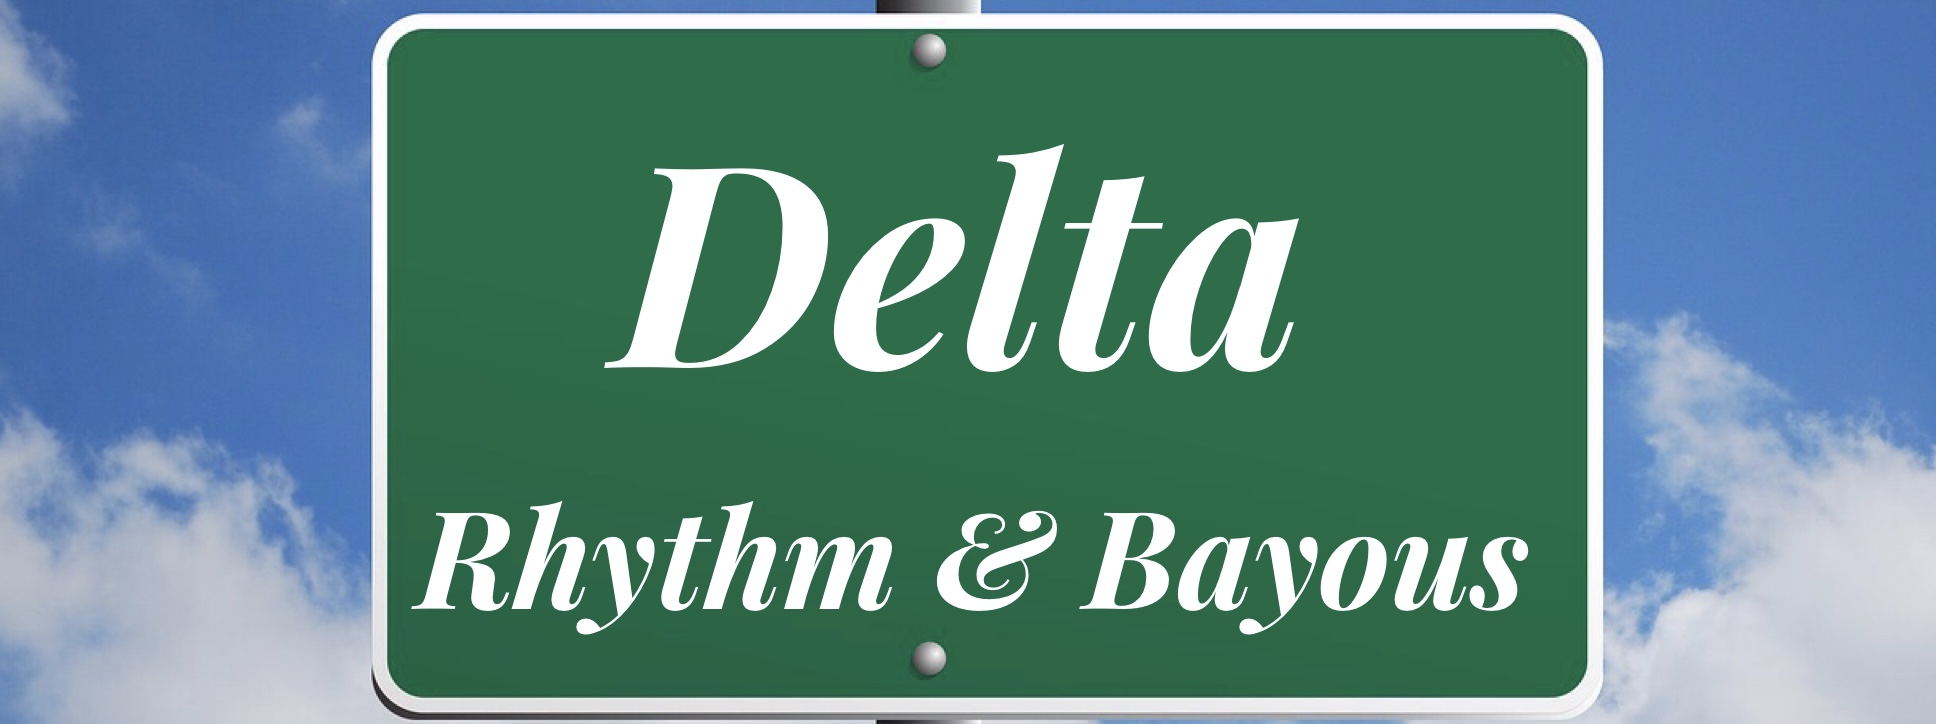 Delta Rhythm & Bayous:  Roll Out of PB Plan